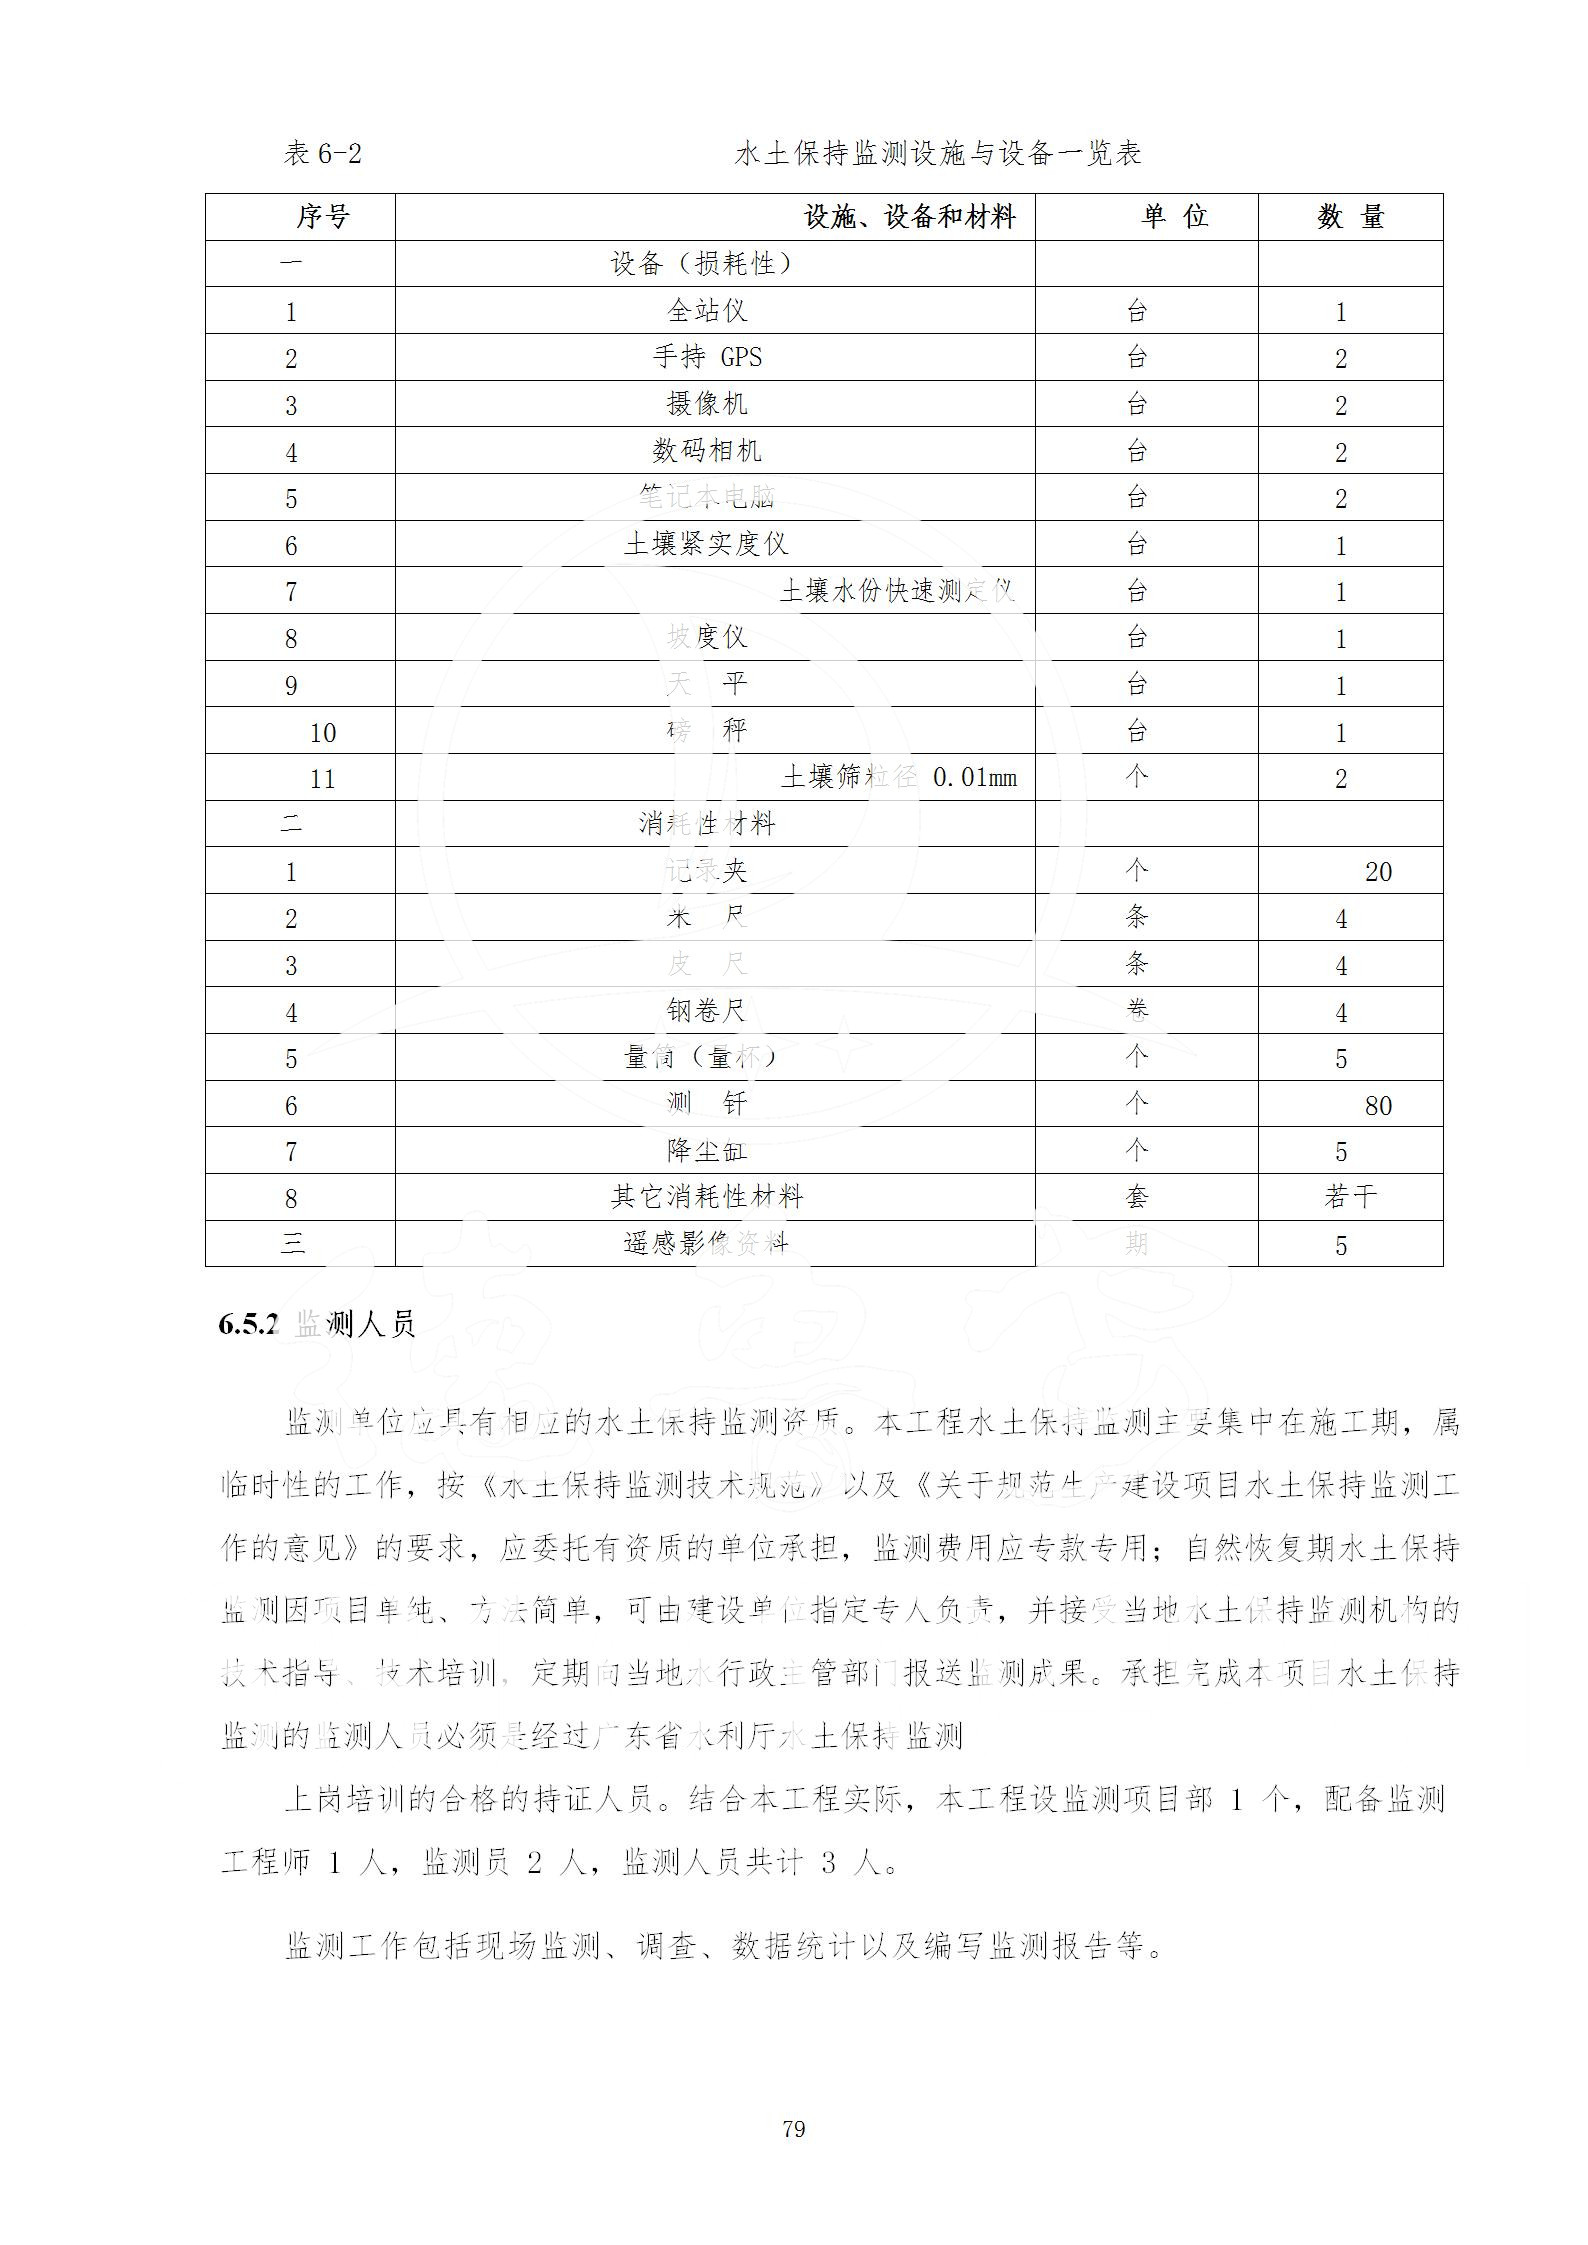 广东省大圣寺水土保持报告  修改稿5_79.jpg